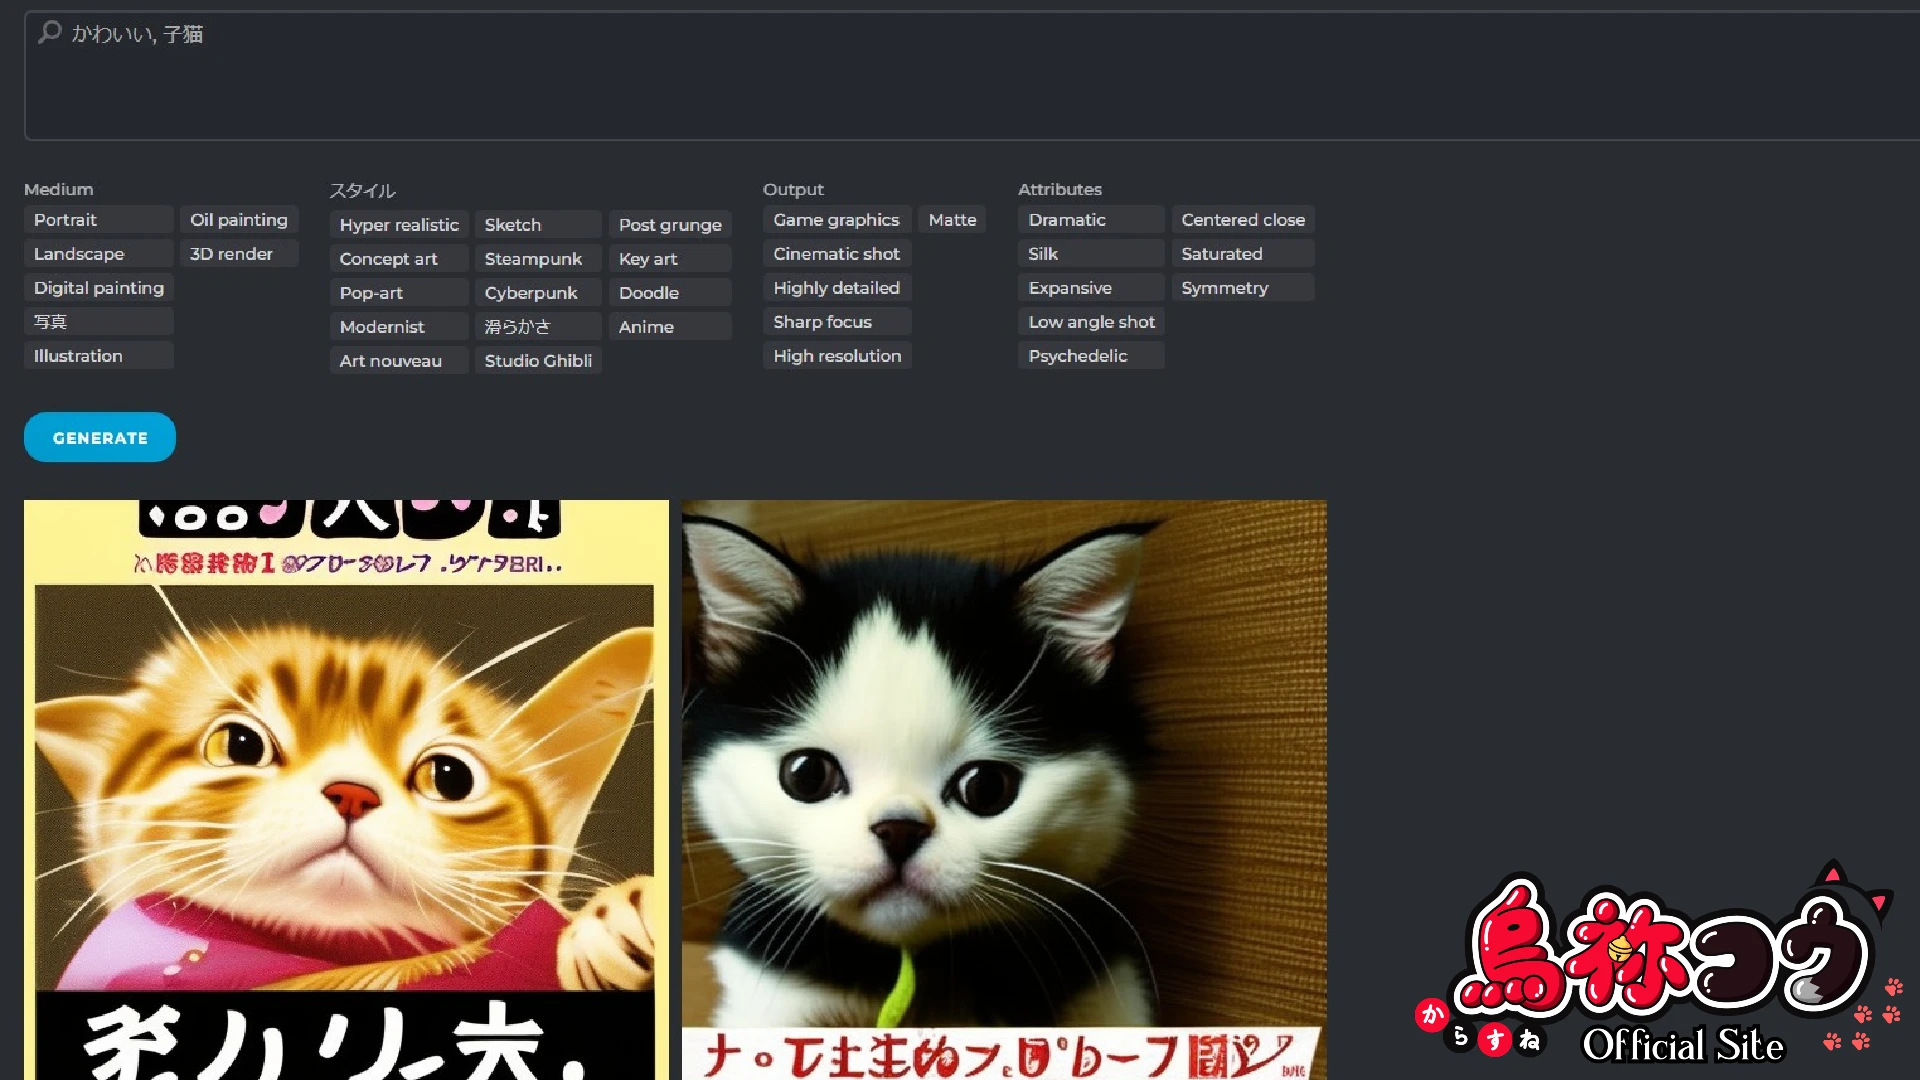 Pixlr の AI generator で作った未知の言語が混ざった子猫のイラスト